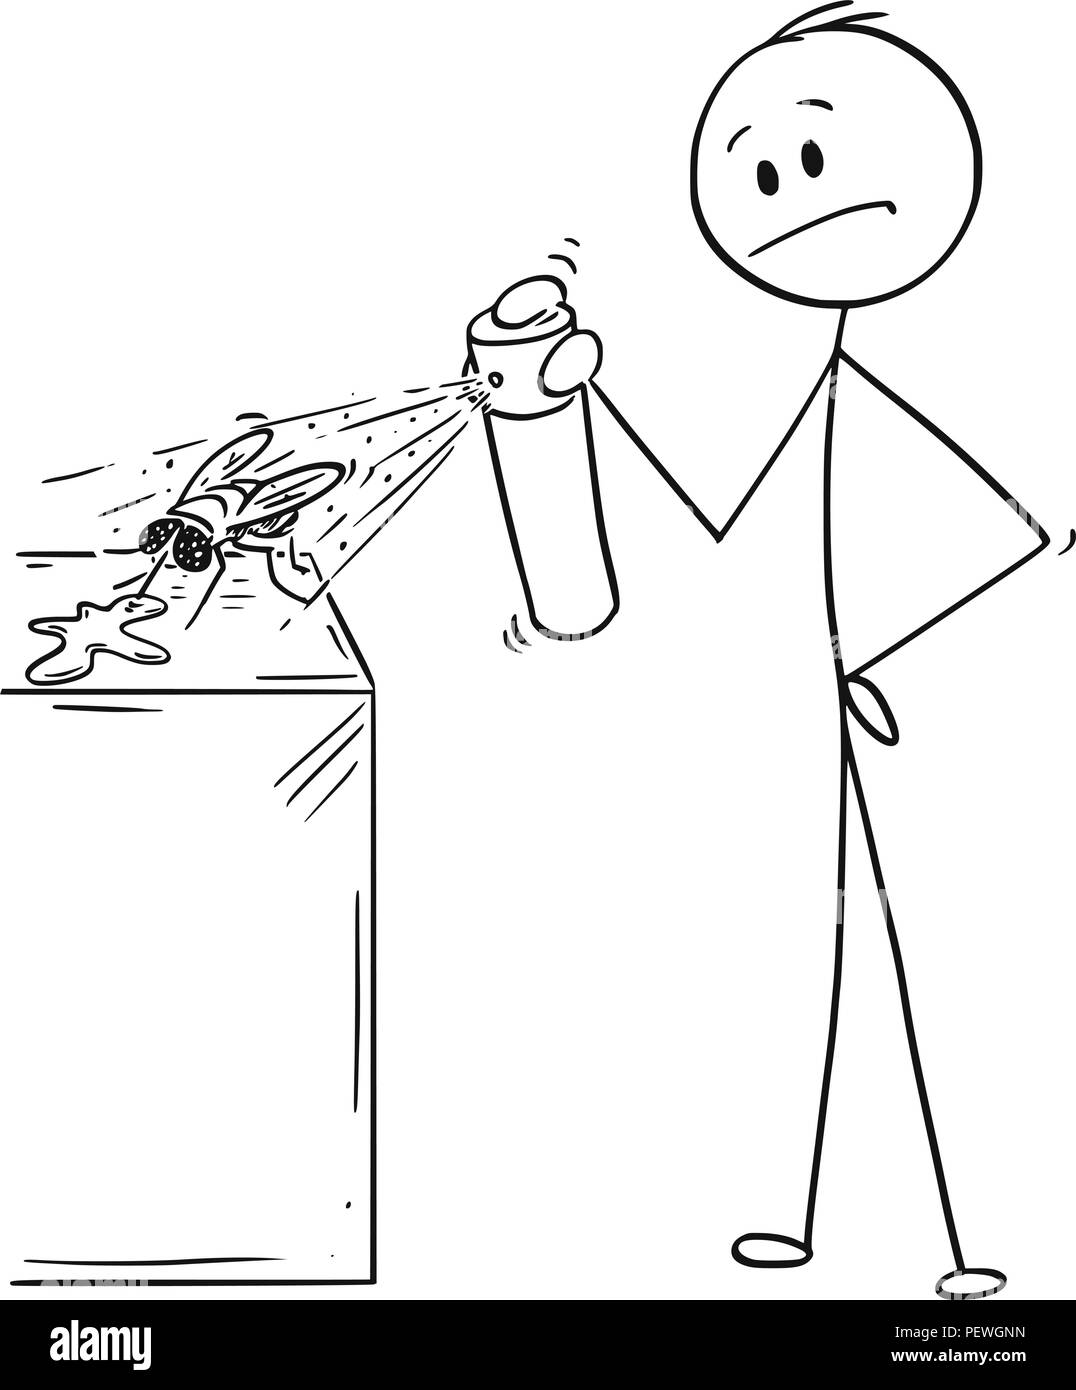 Caricature de l'homme de frapper et tuer une mouche avec un insecticide Spray chimique Illustration de Vecteur